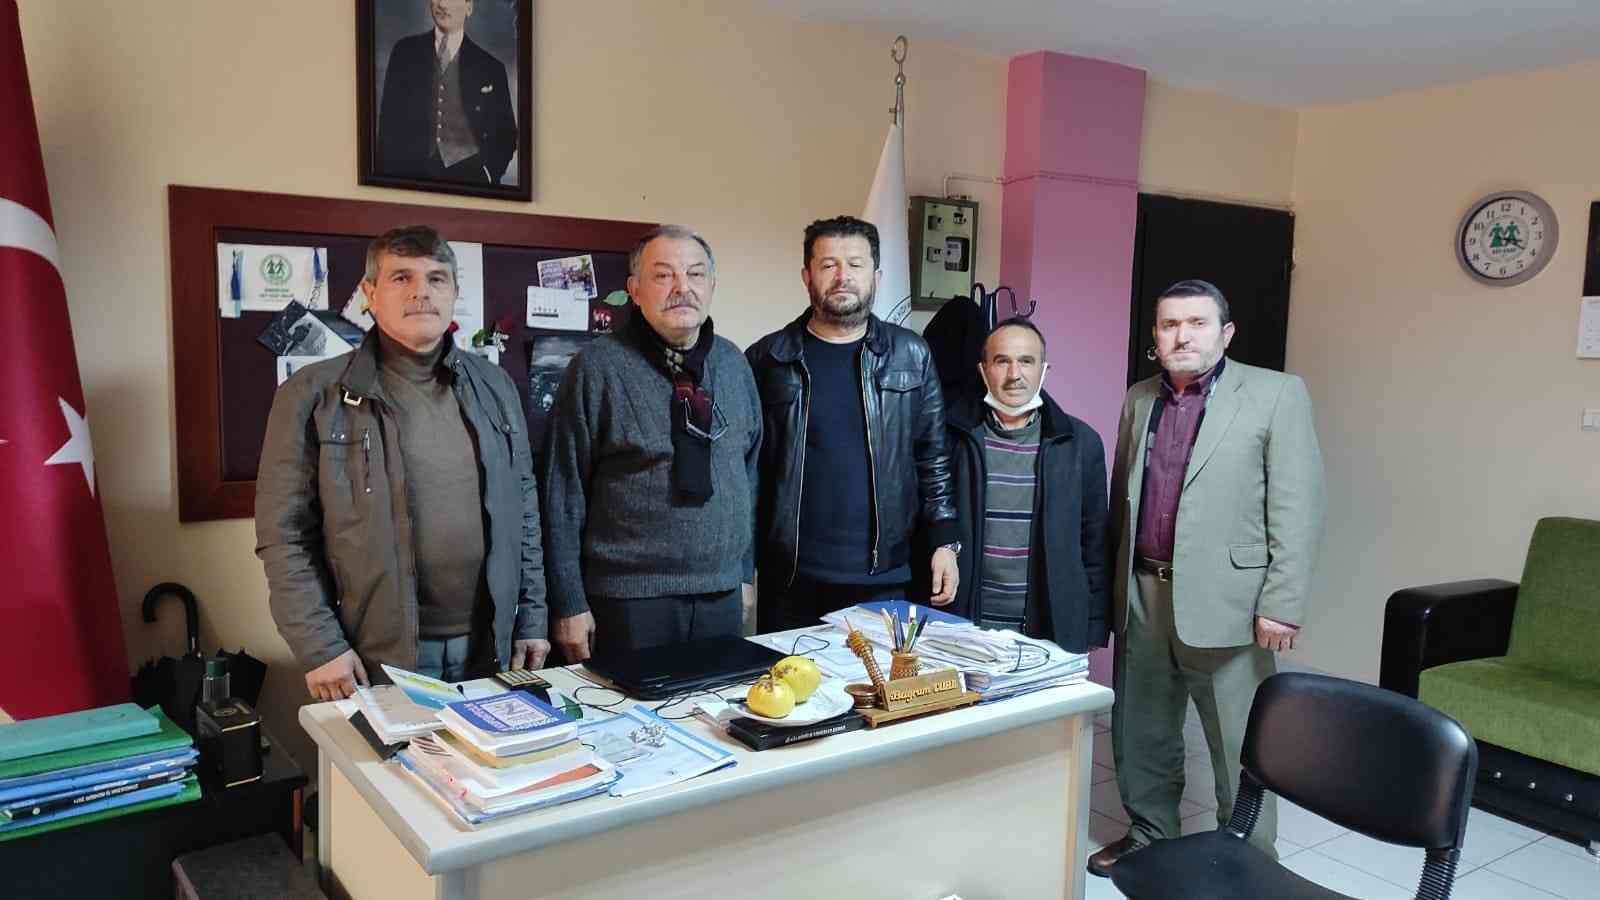 Keçecioğlu Platformu üyeleri’nden Cura’ya destek ziyareti #zonguldak